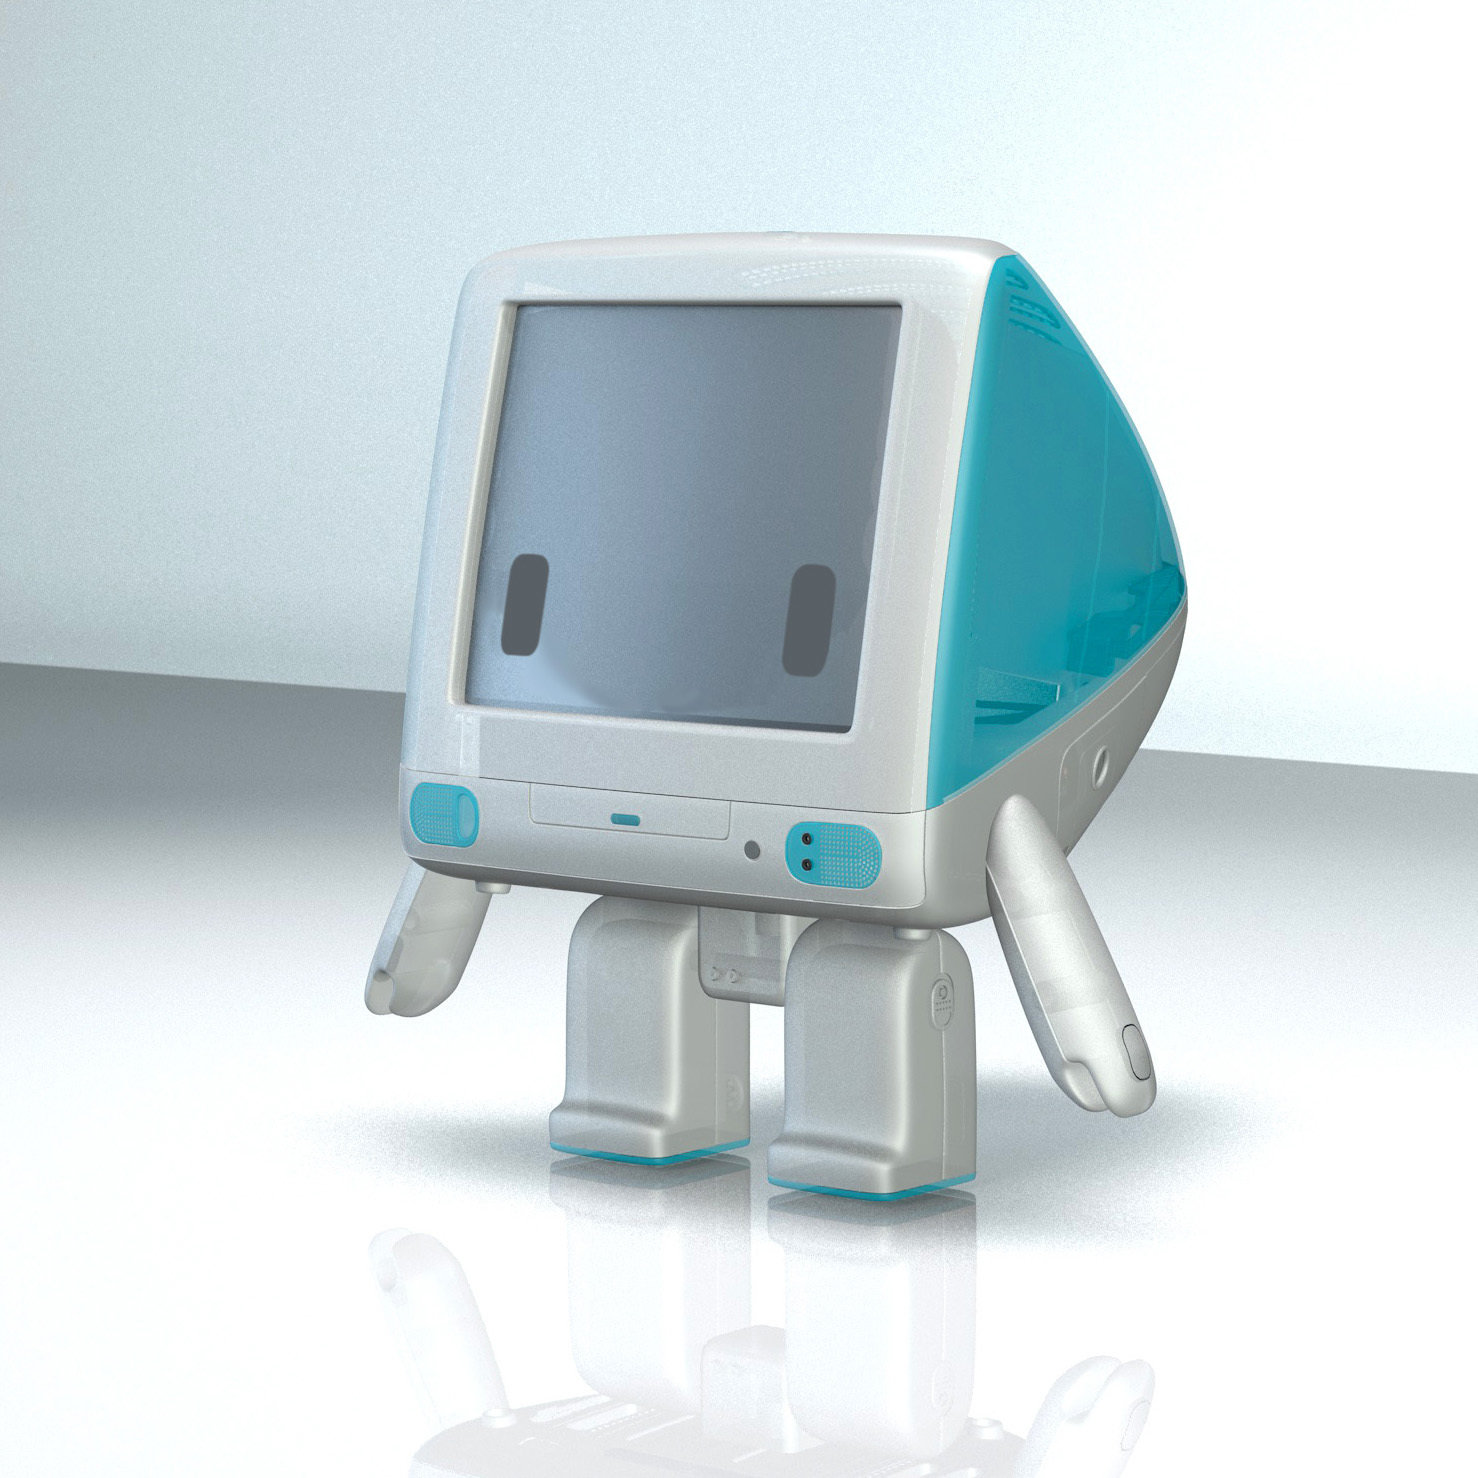 iBot G3, versão de brinquedo do iMac G3